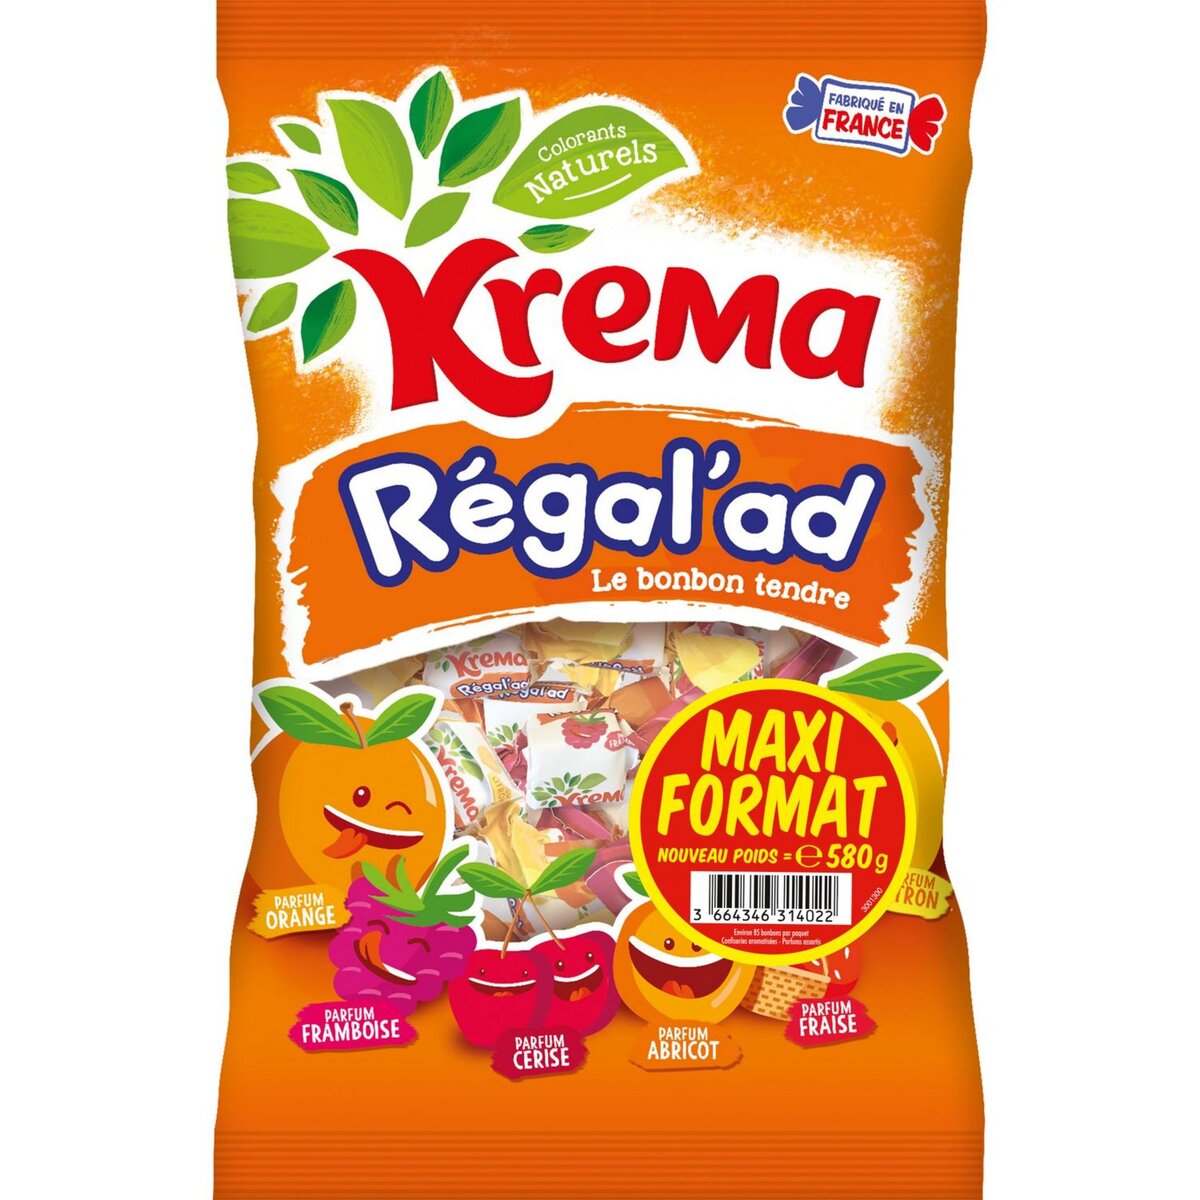 KREMA Regal'ad assortiment de bonbons aux fruits 580g